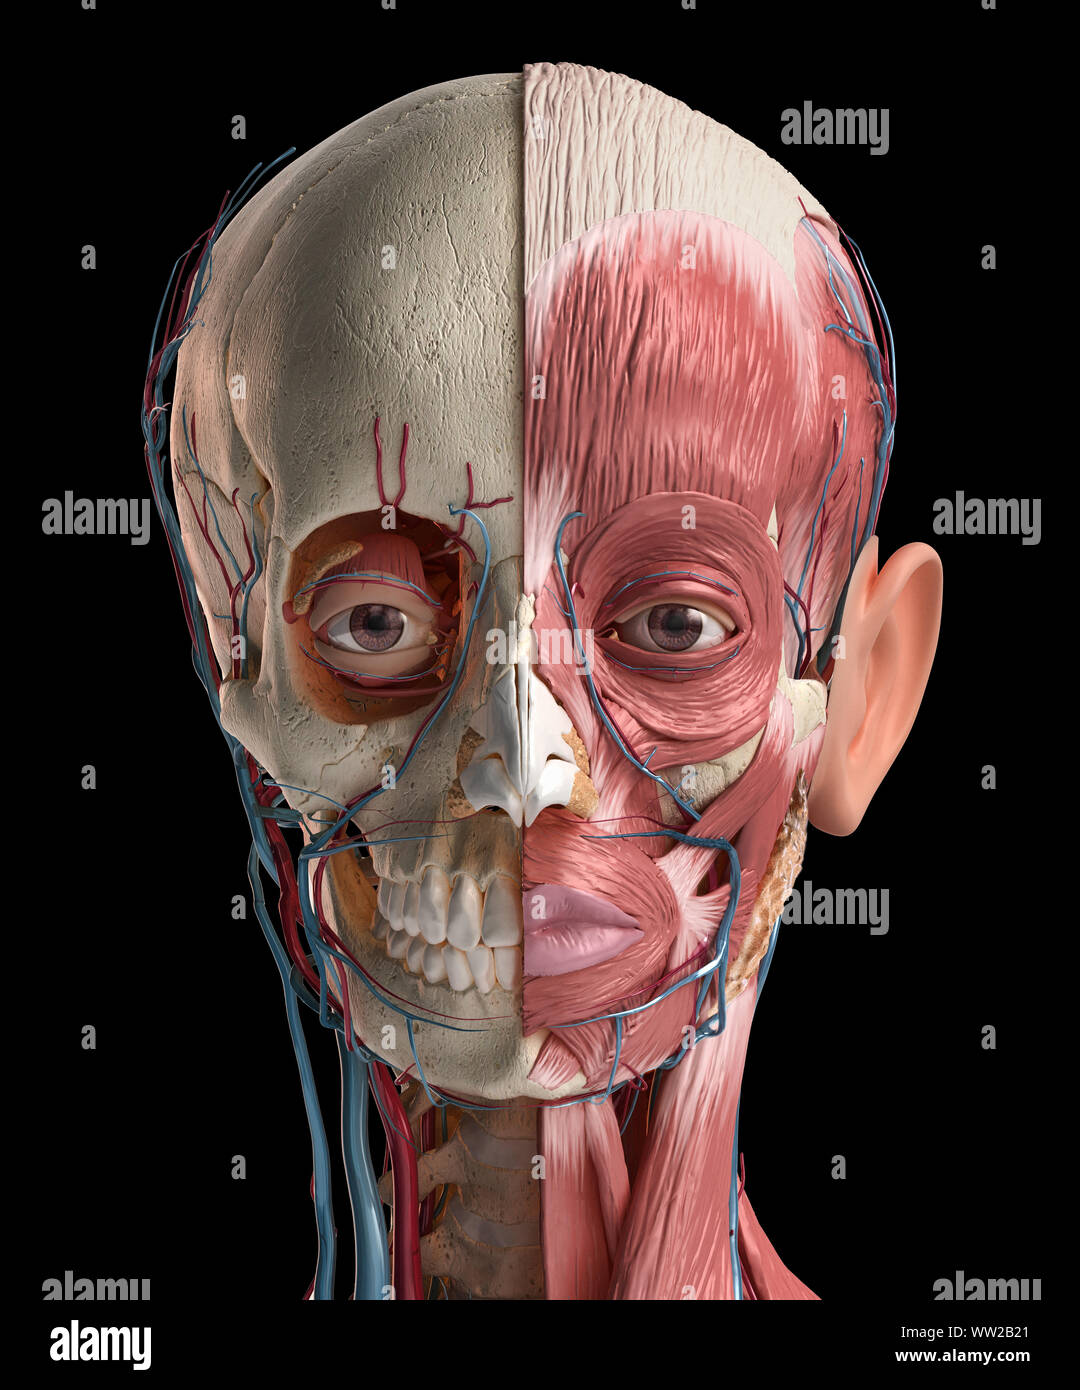 Menschlichen Kopf Anatomie 3d-Abbildung. Übersicht Schädel, Gesichtsmuskulatur, Venen und Arterien. Auf schwarzem Hintergrund. Stockfoto